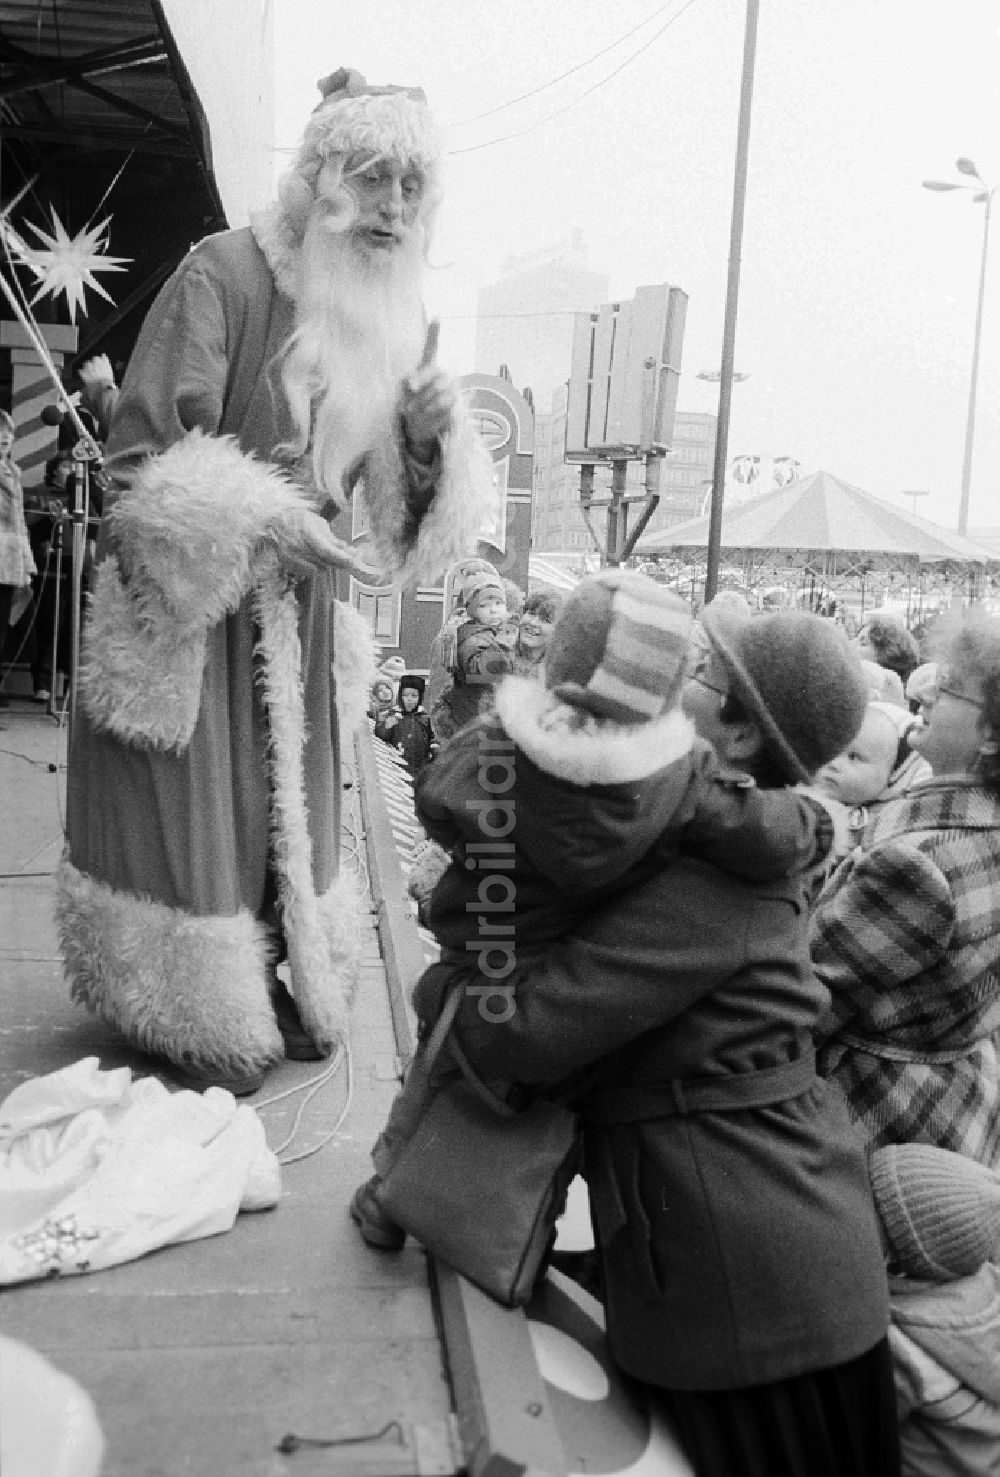 Berlin: Der Weihnachtsmann auf den Berliner Weihnachtsmarkt in Berlin, der ehemaligen Hauptstadt der DDR, Deutsche Demokratische Republik